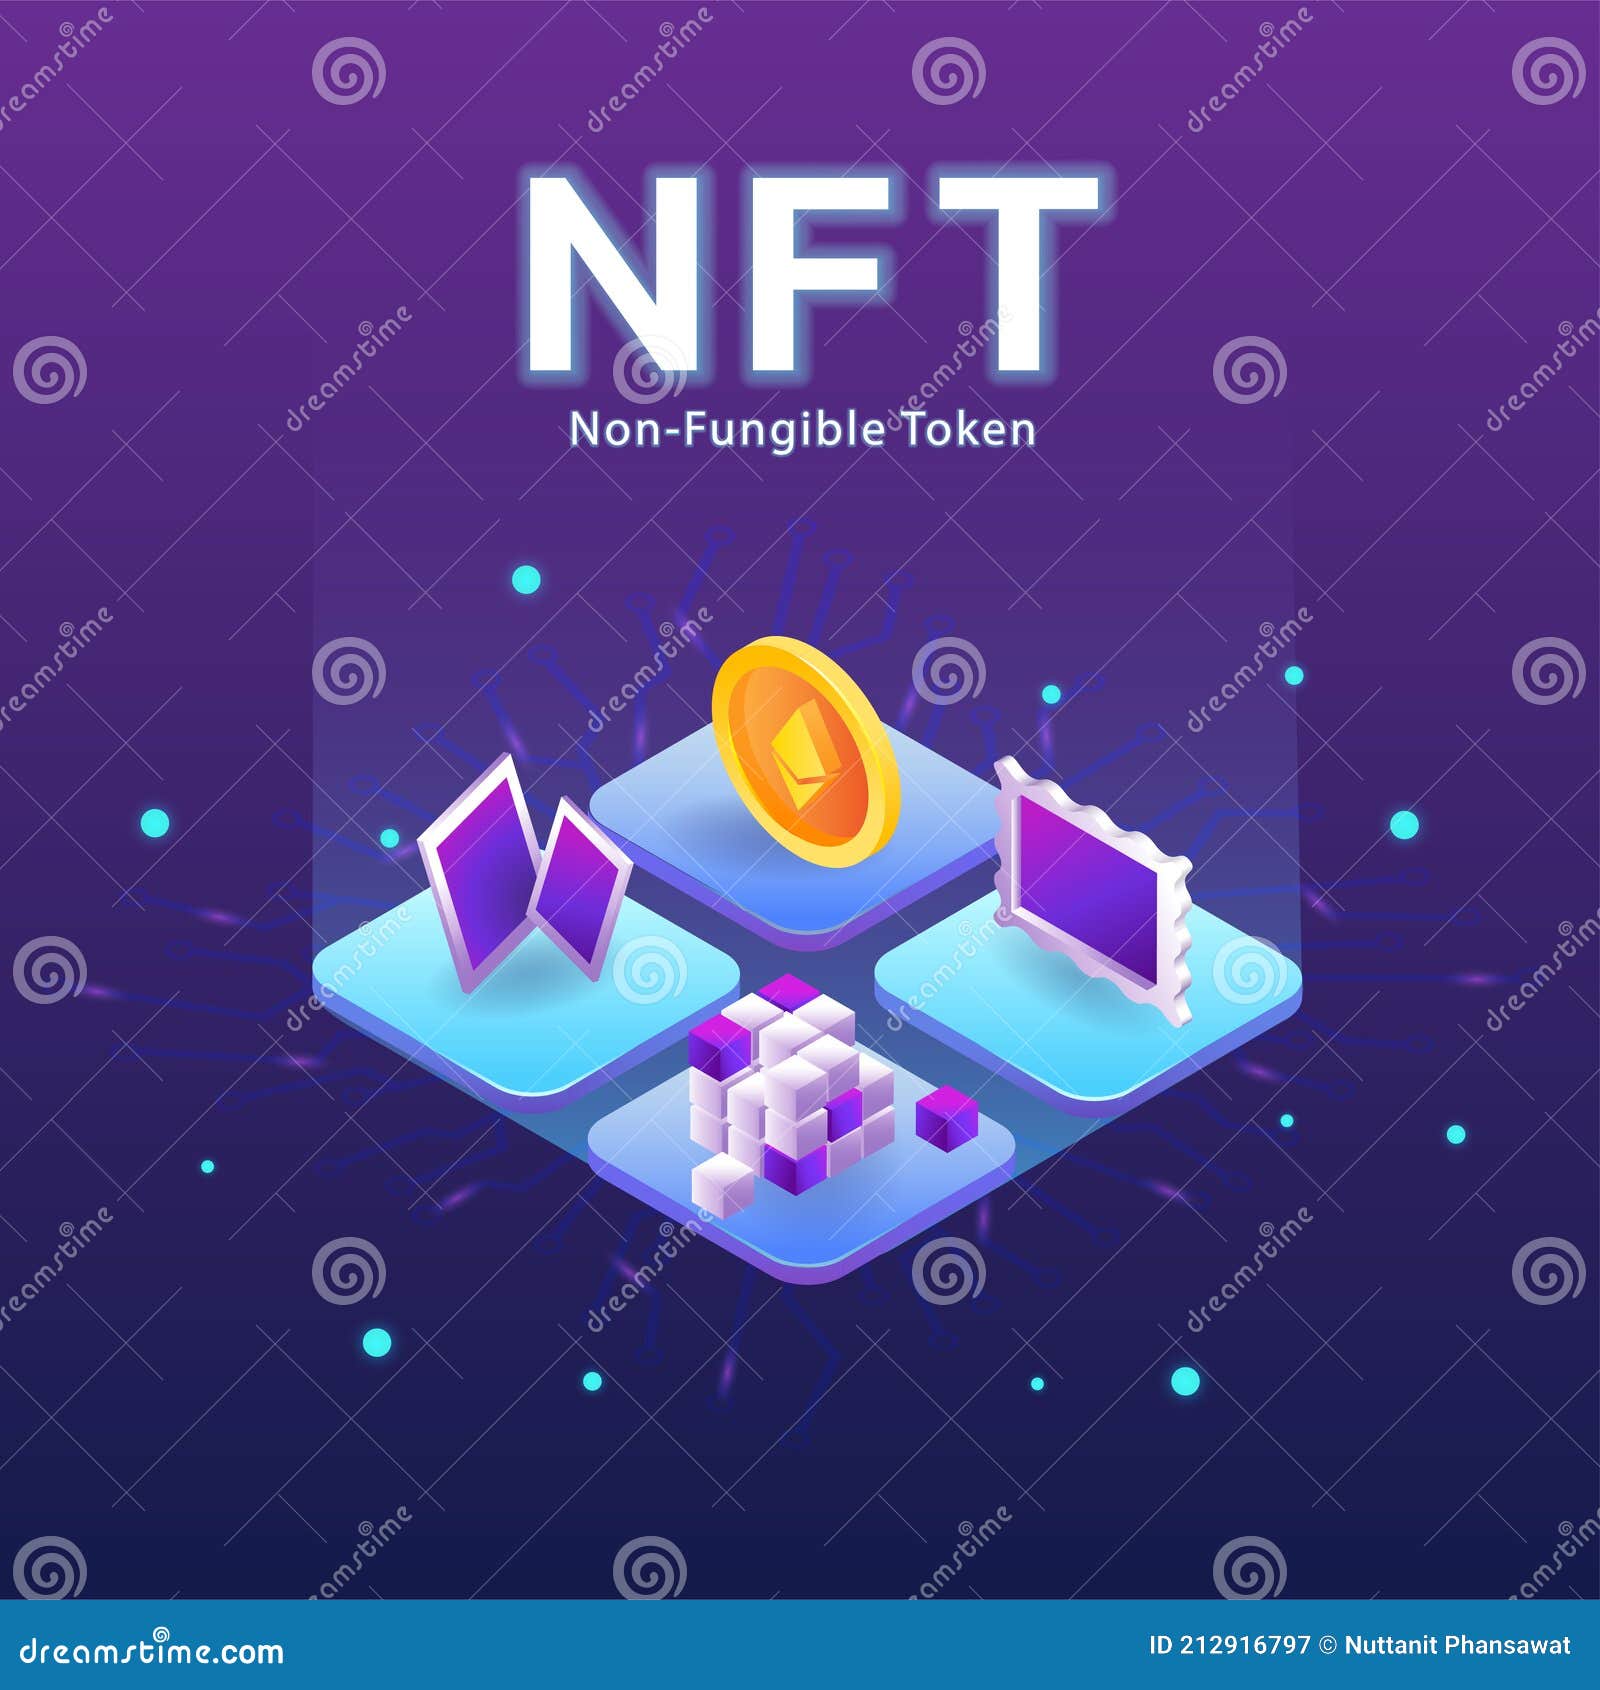 concept of nft ,non-fungible token